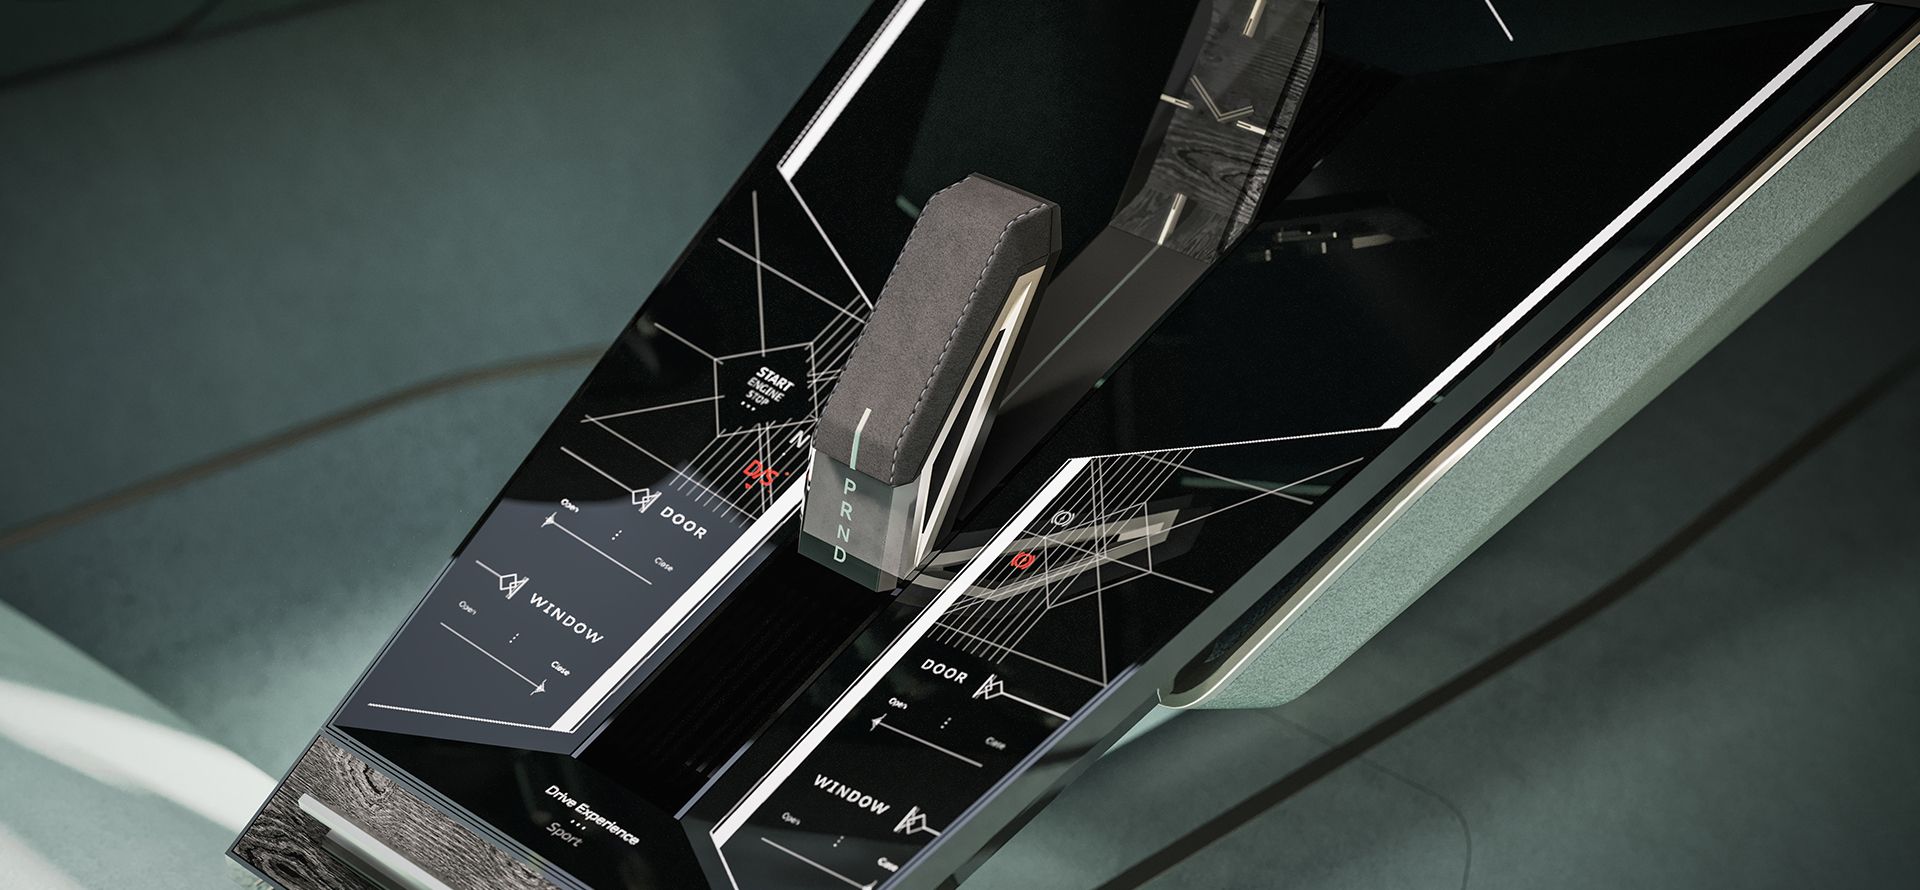 Audi skysphere’in orta konsolundaki kontrol elemanı